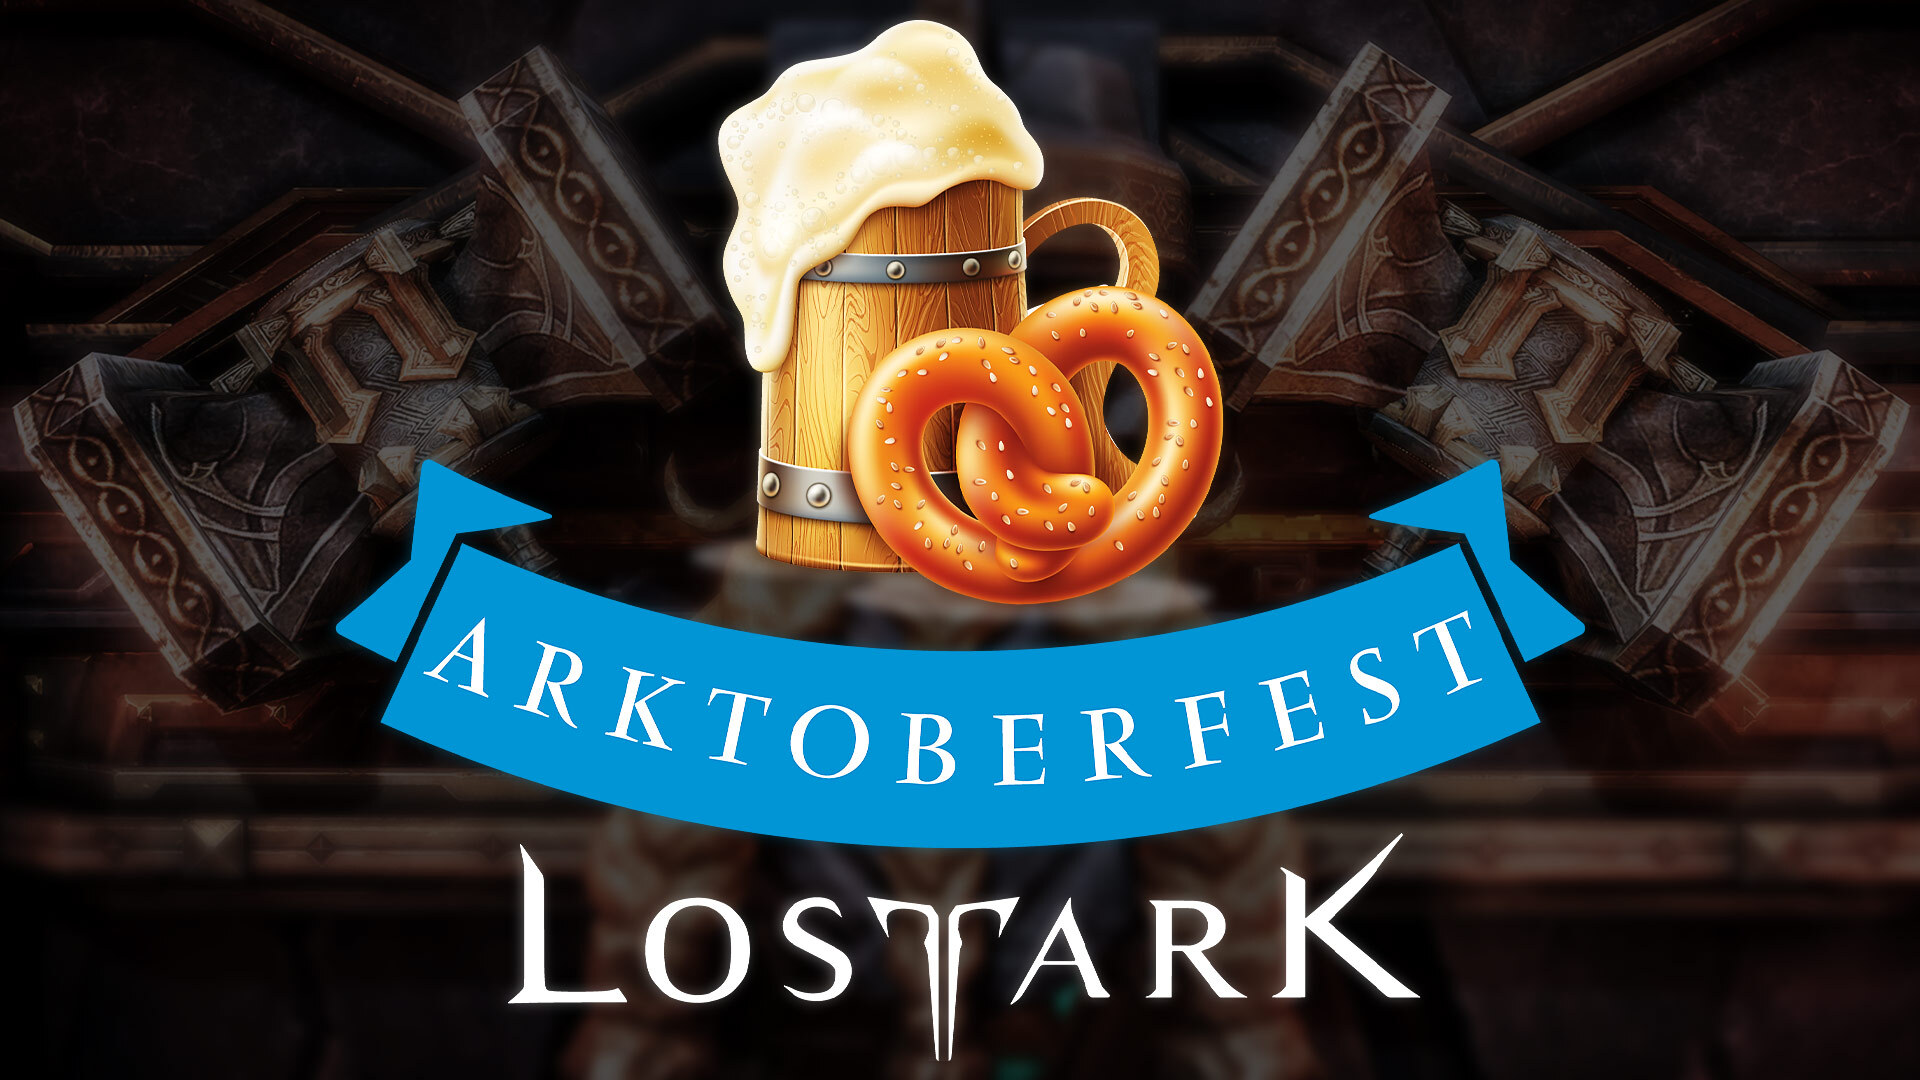 Zapomnijcie o Octoberfest, Arktoberfest jest dużo lepszy!